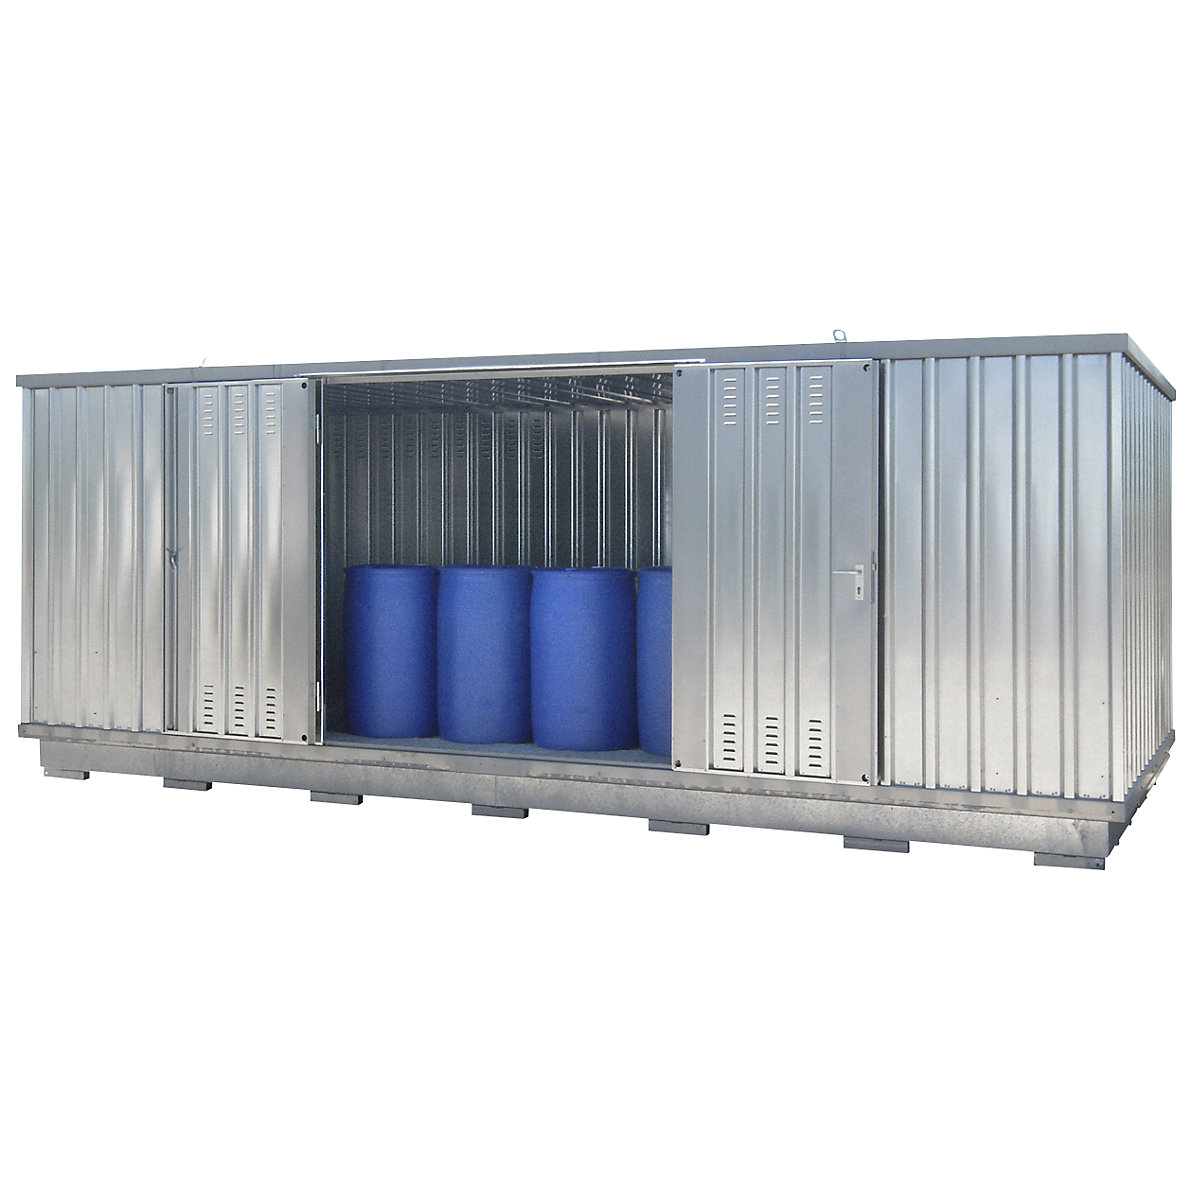 Gefahrstoff-Container auch zur aktiven Lagerung entzündbarer Stoffe, Außen-HxBxT 2385 x 6075 x 2875 mm, verzinkt